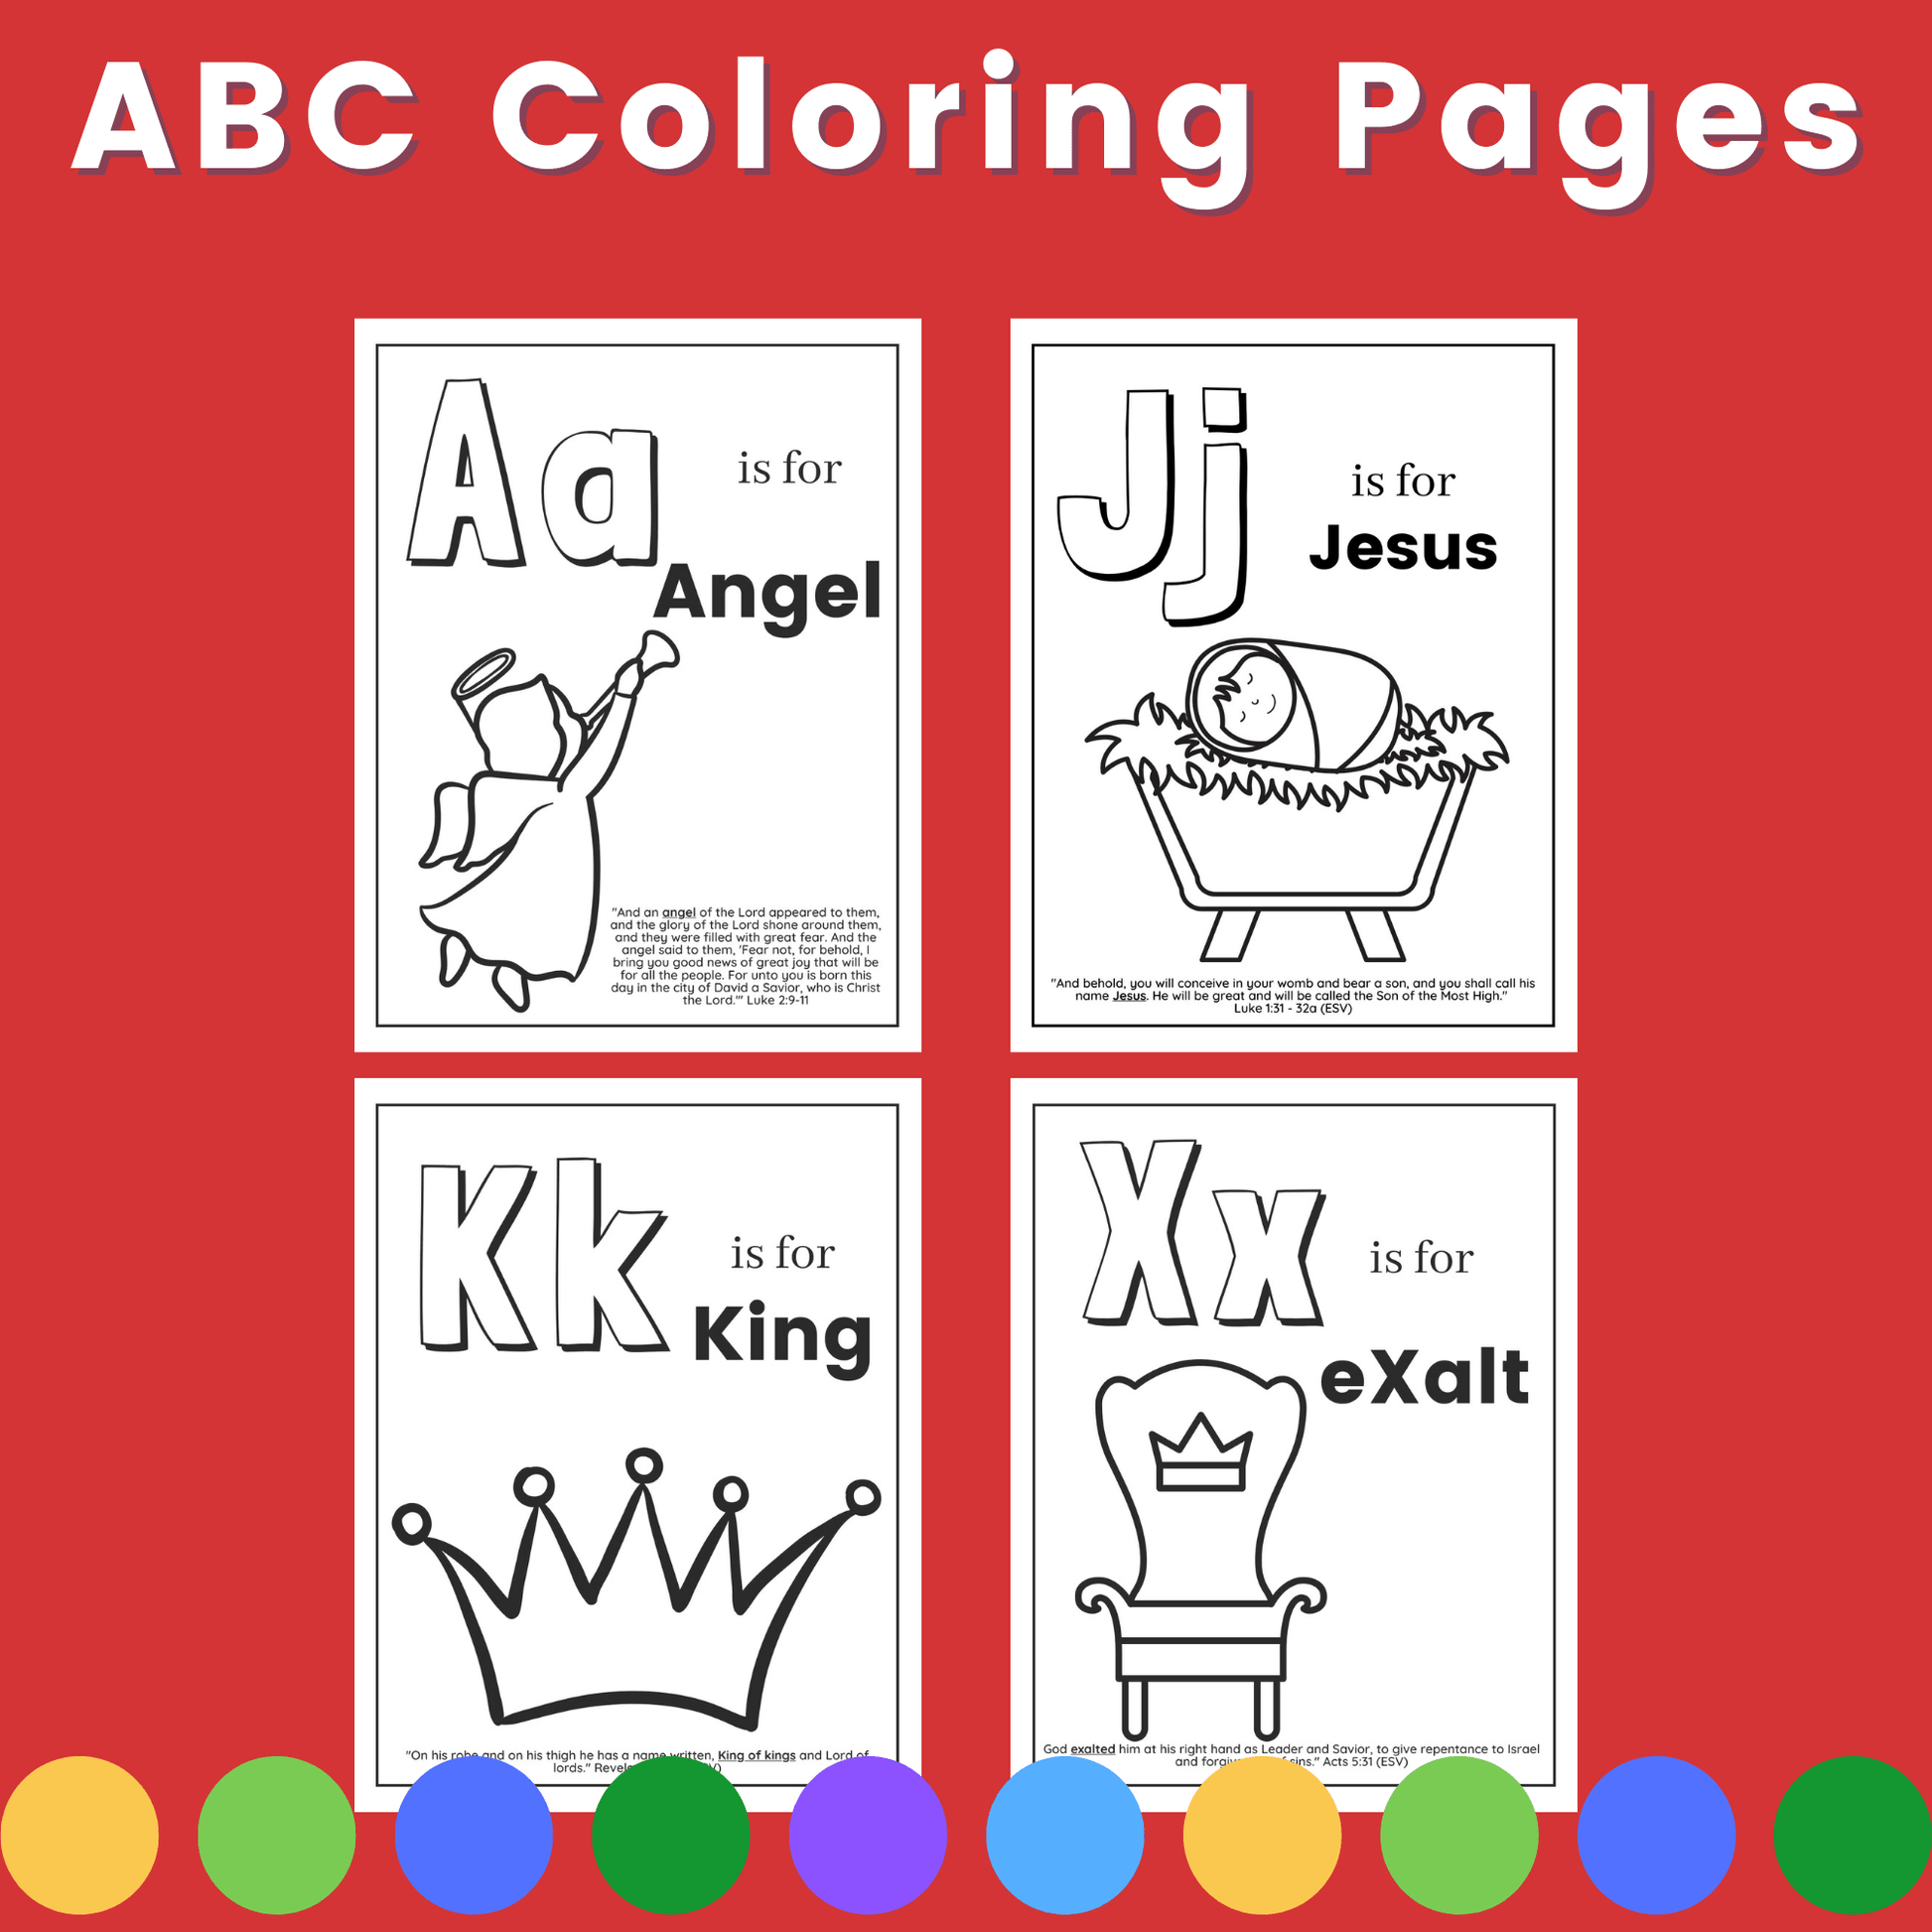 ABC dot marker activity book : Preschool coloring book, dot